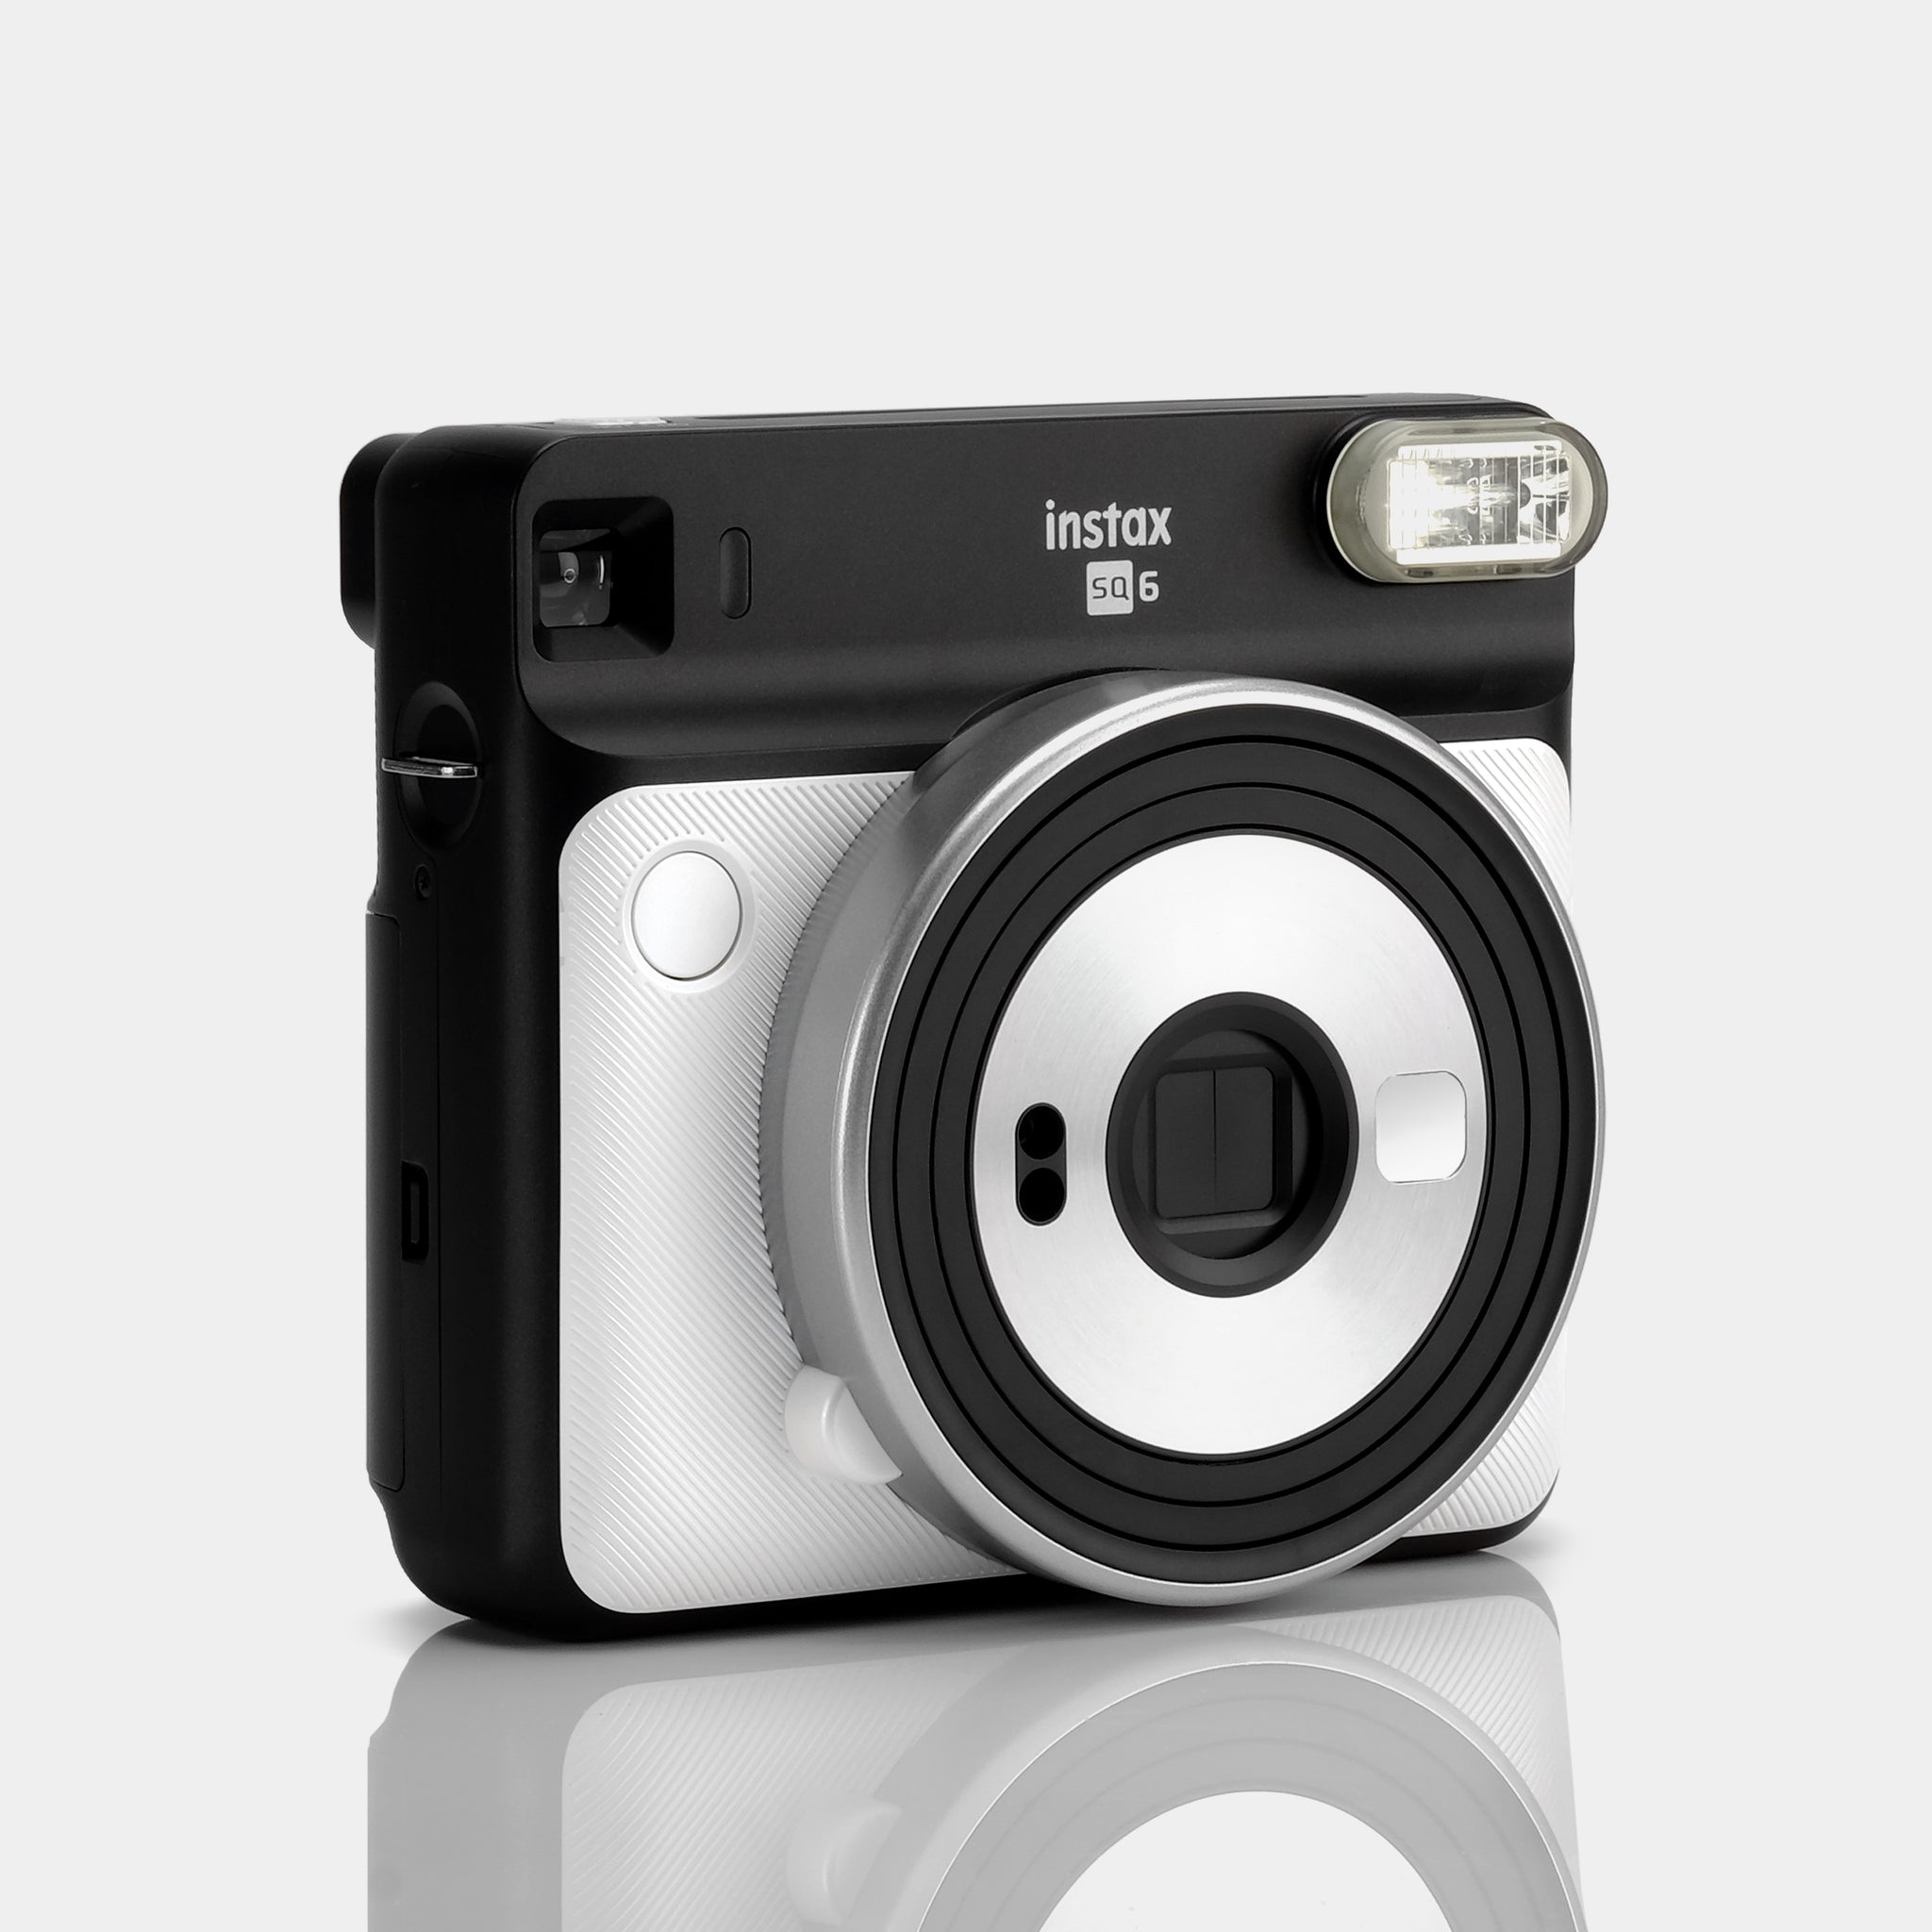  Fujifilm Instax Square SQ6 - Instant Film Camera - Pearl White  : Electronics